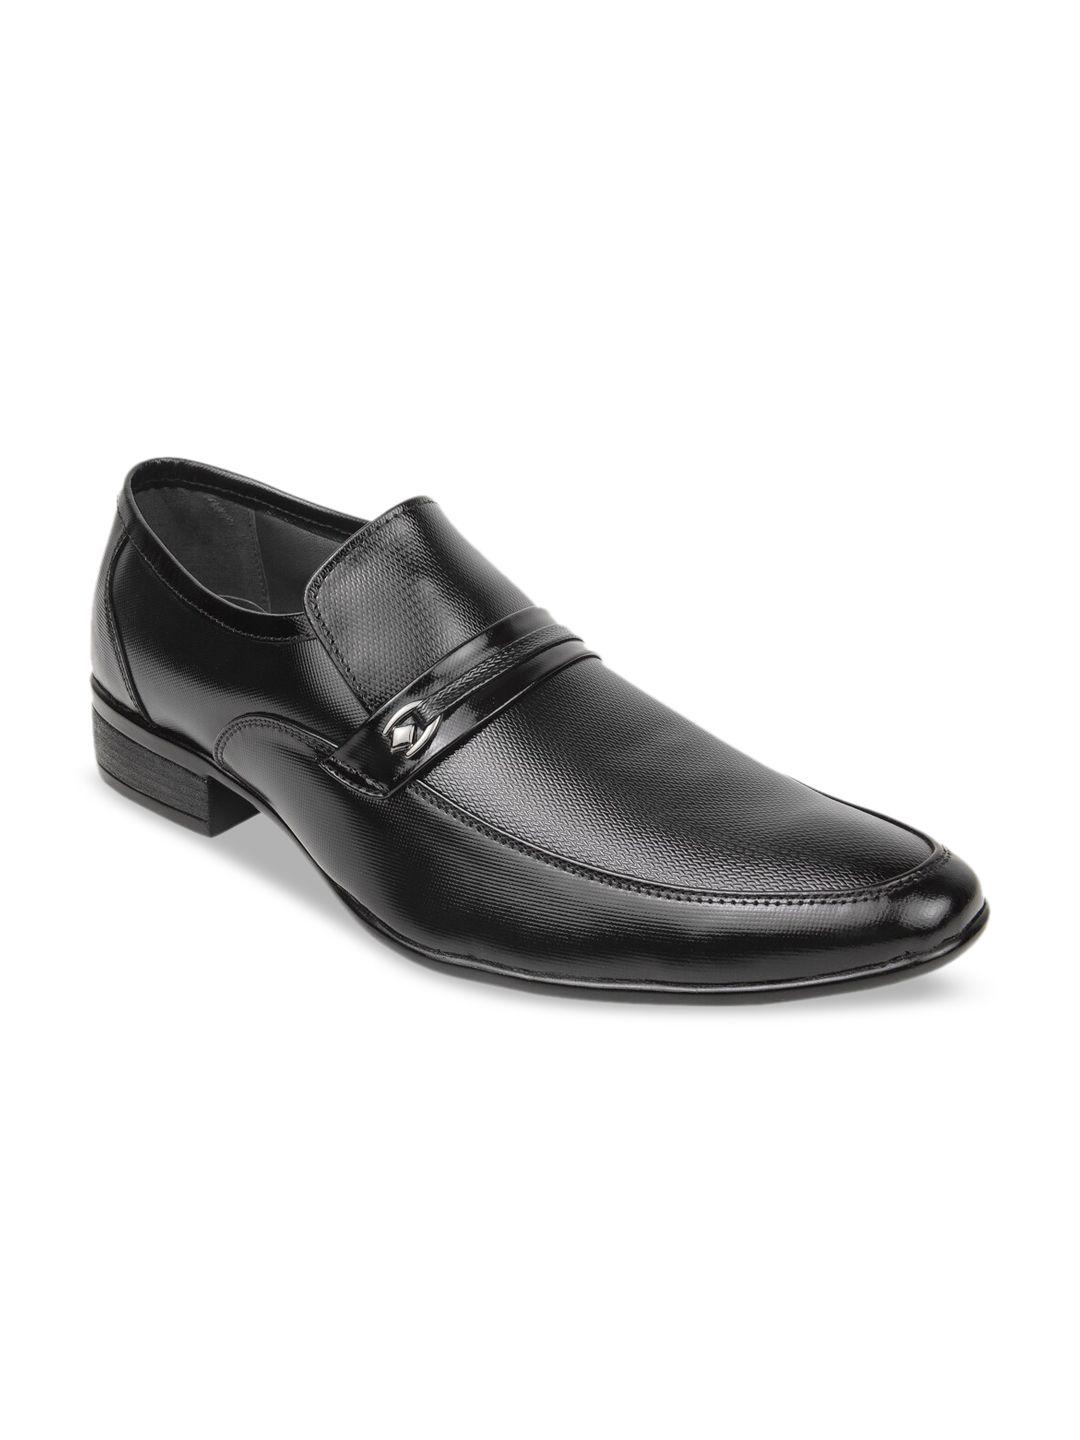 Regal Men Black Textured Formal Slip-On Formal Shoes